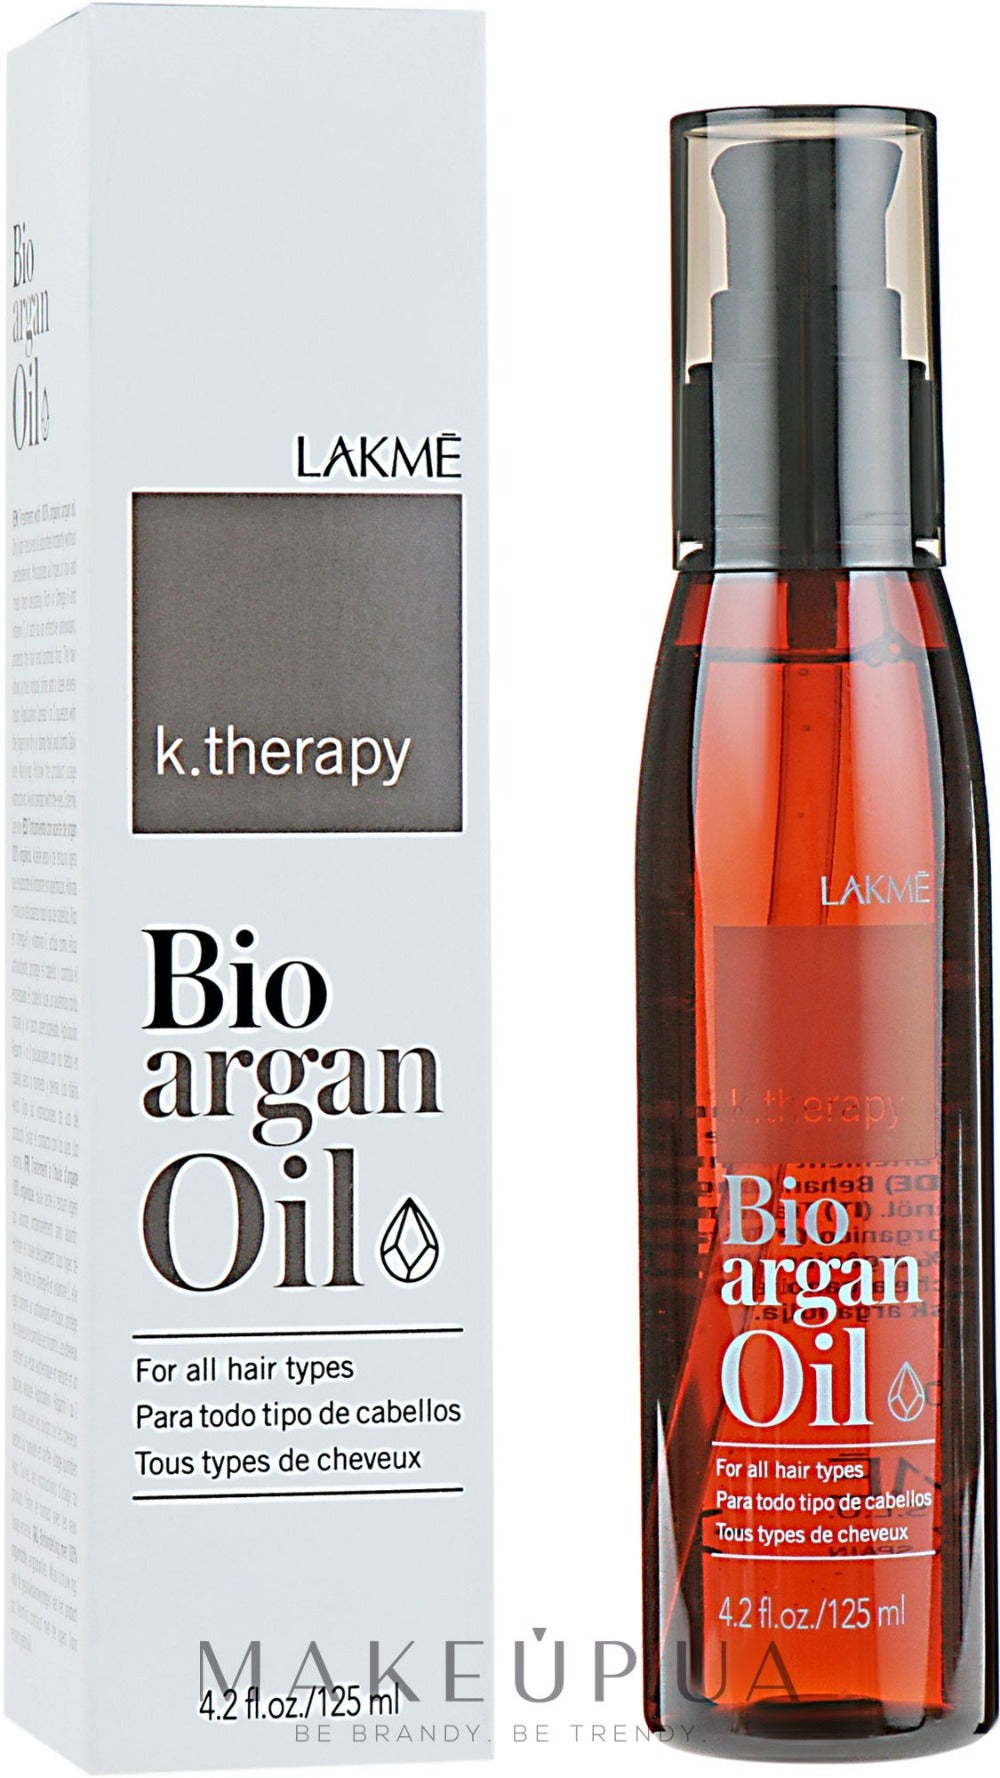 Lakme Bioargan Oil -125 ml